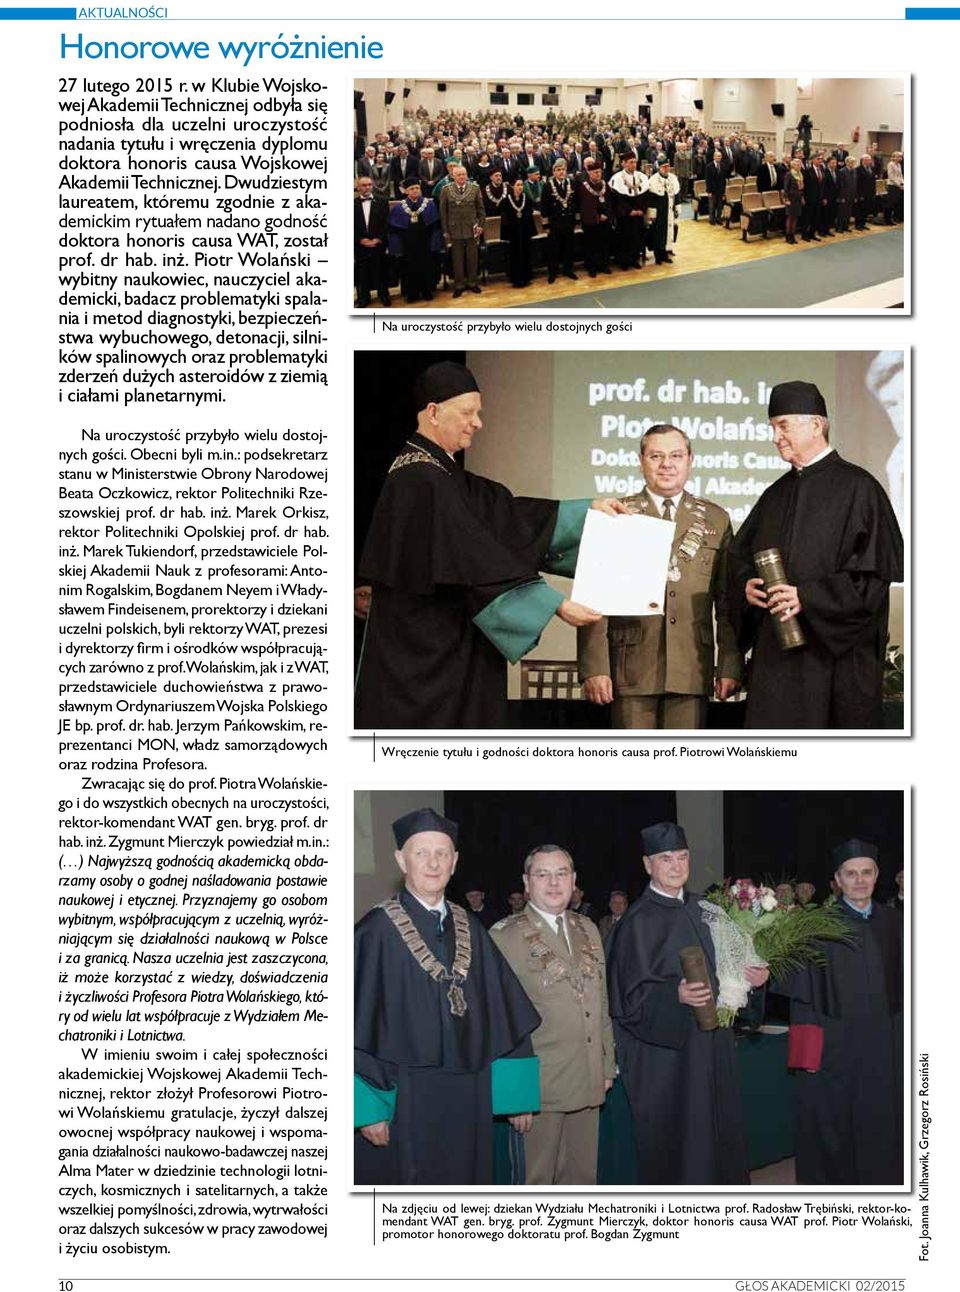 Dwudziestym laureatem, któremu zgodnie z akademickim rytuałem nadano godność doktora honoris causa WAT, został prof. dr hab. inż.